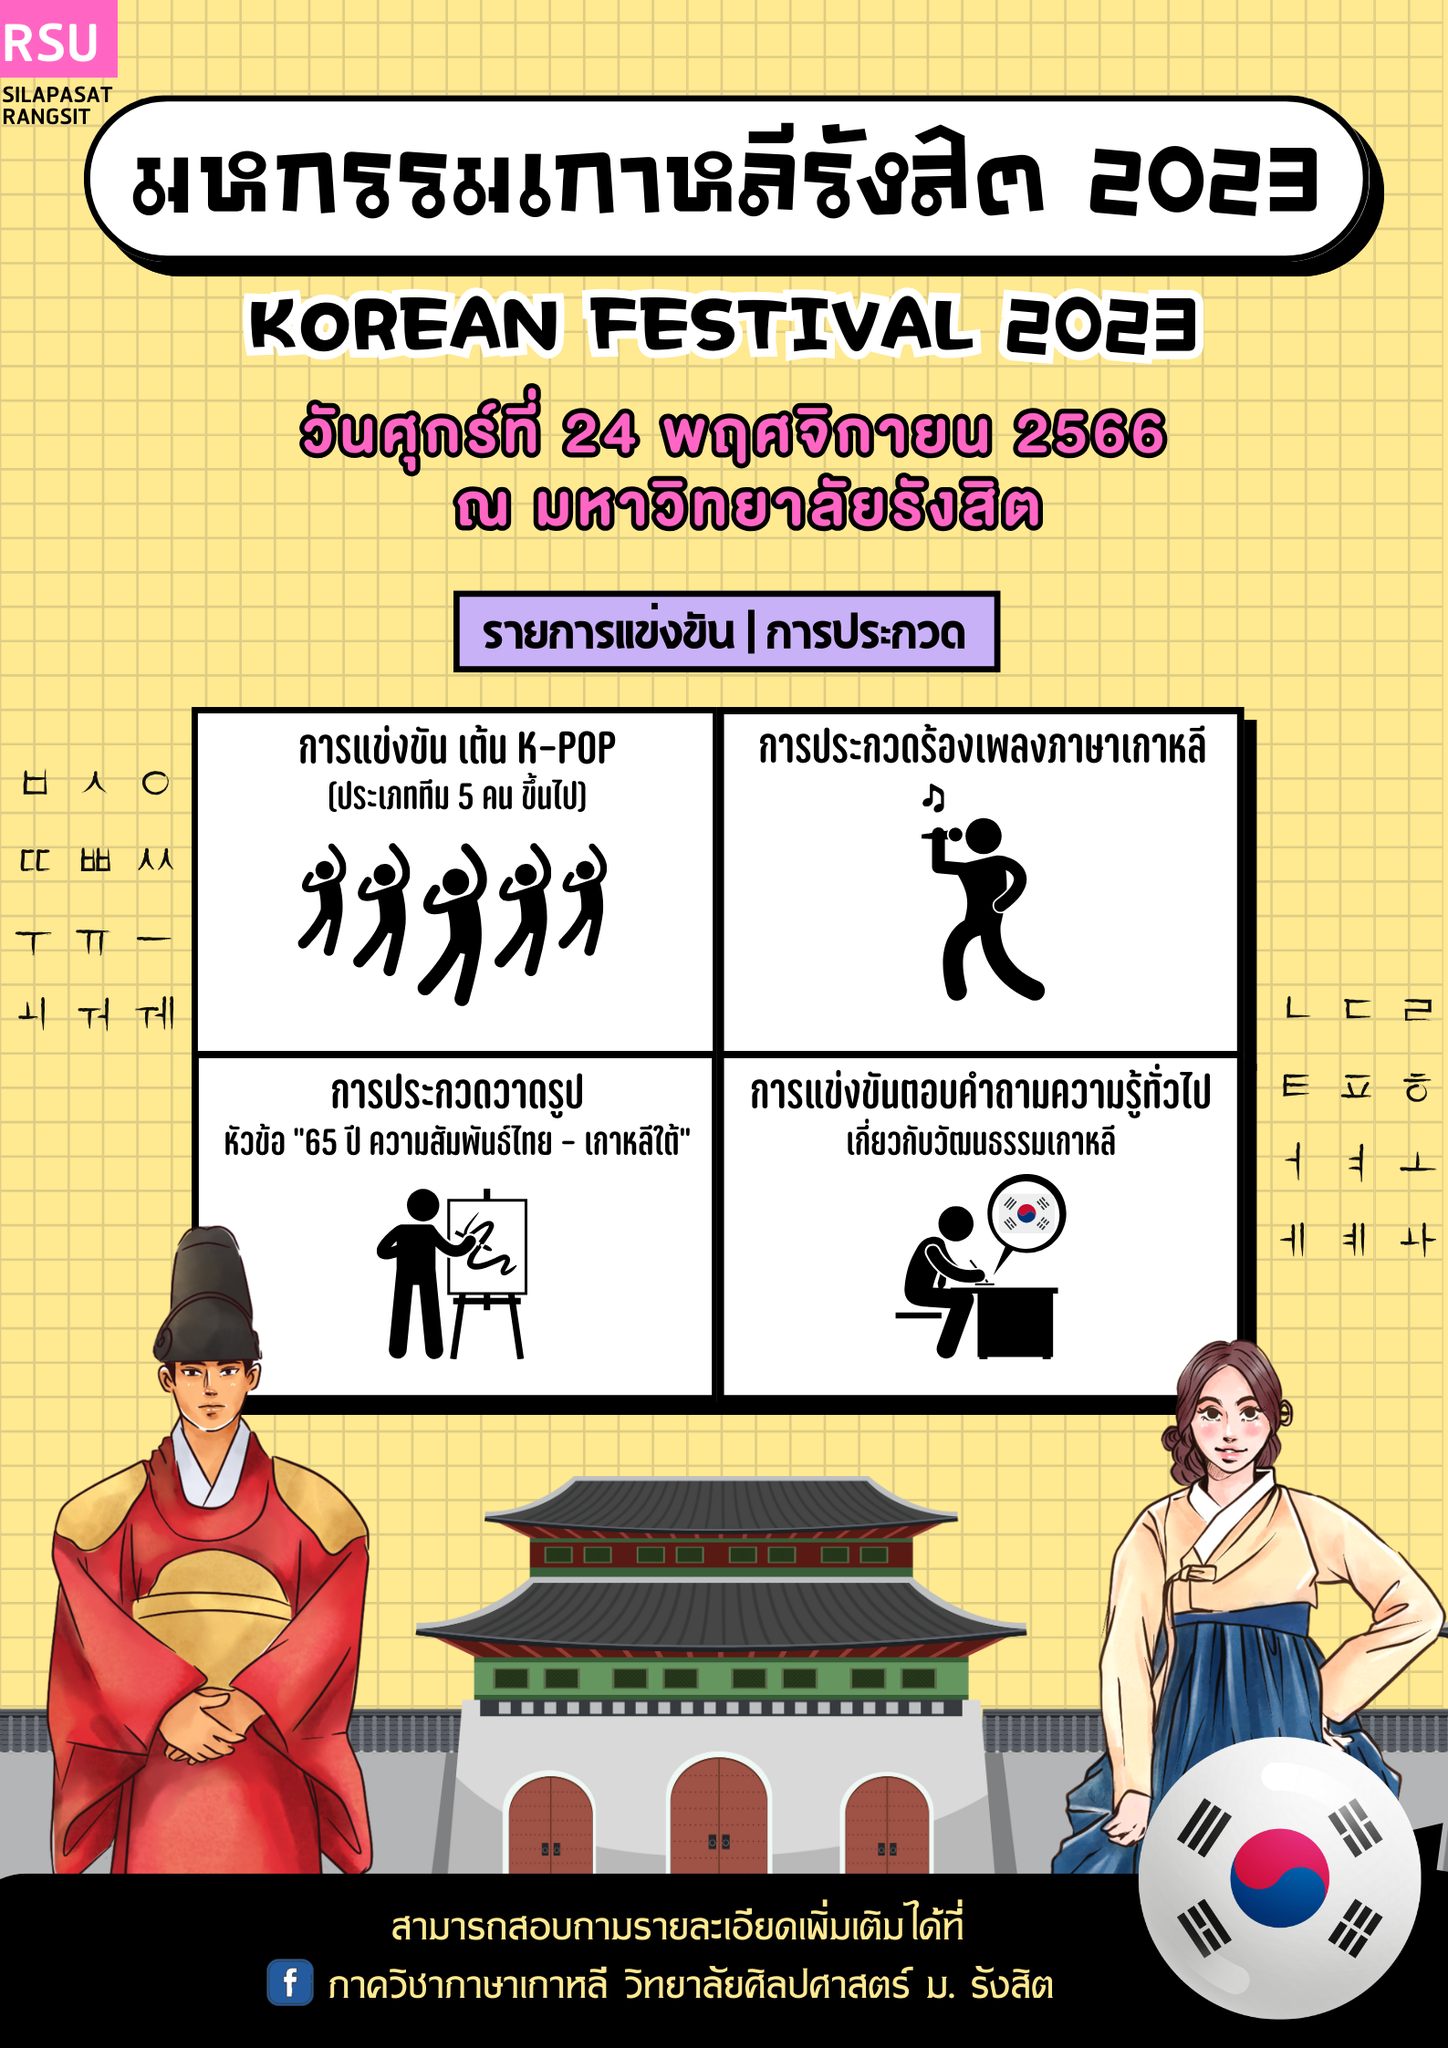 ศิลปศาสตร์ ม.รังสิต จัดมหกรรมเกาหลีรังสิต 2023